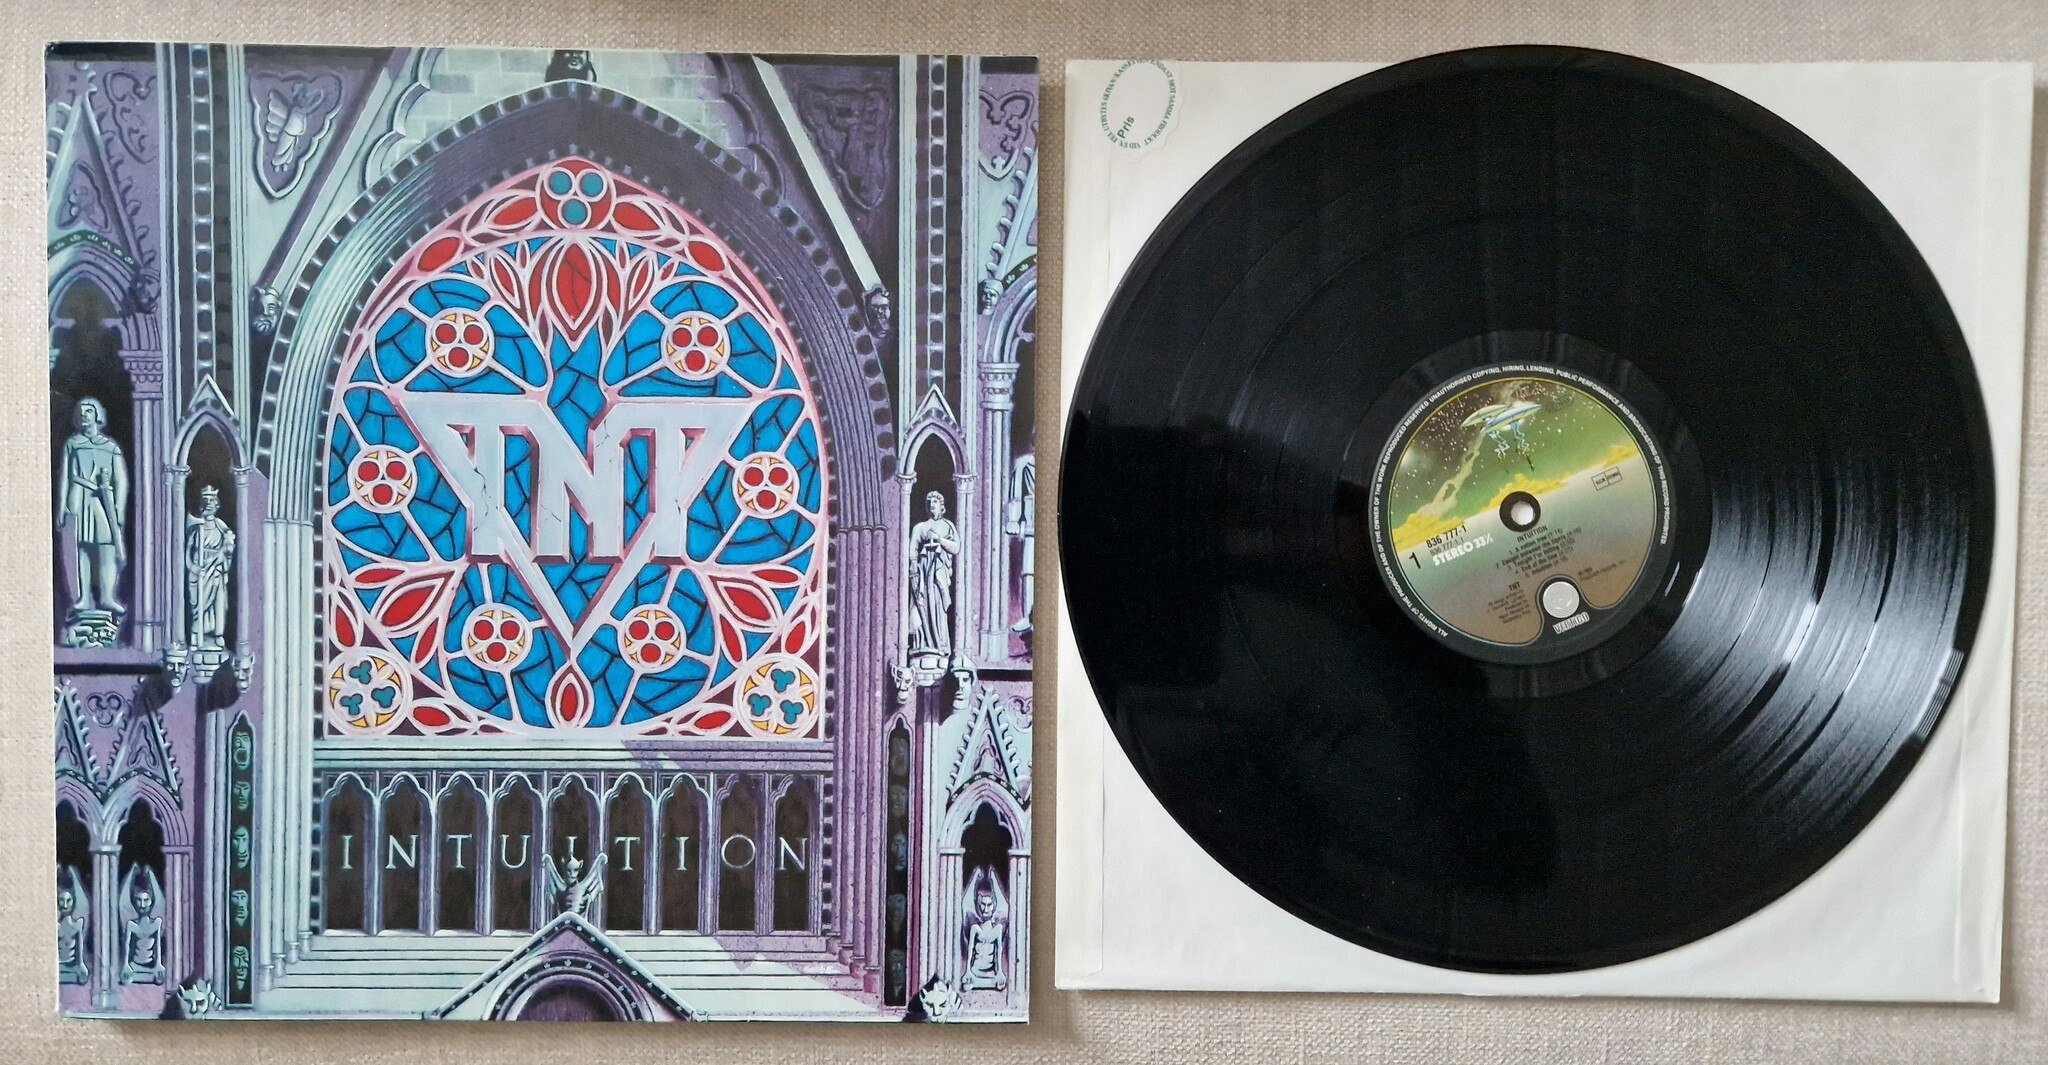 TNT, Intuition. Vinyl LP